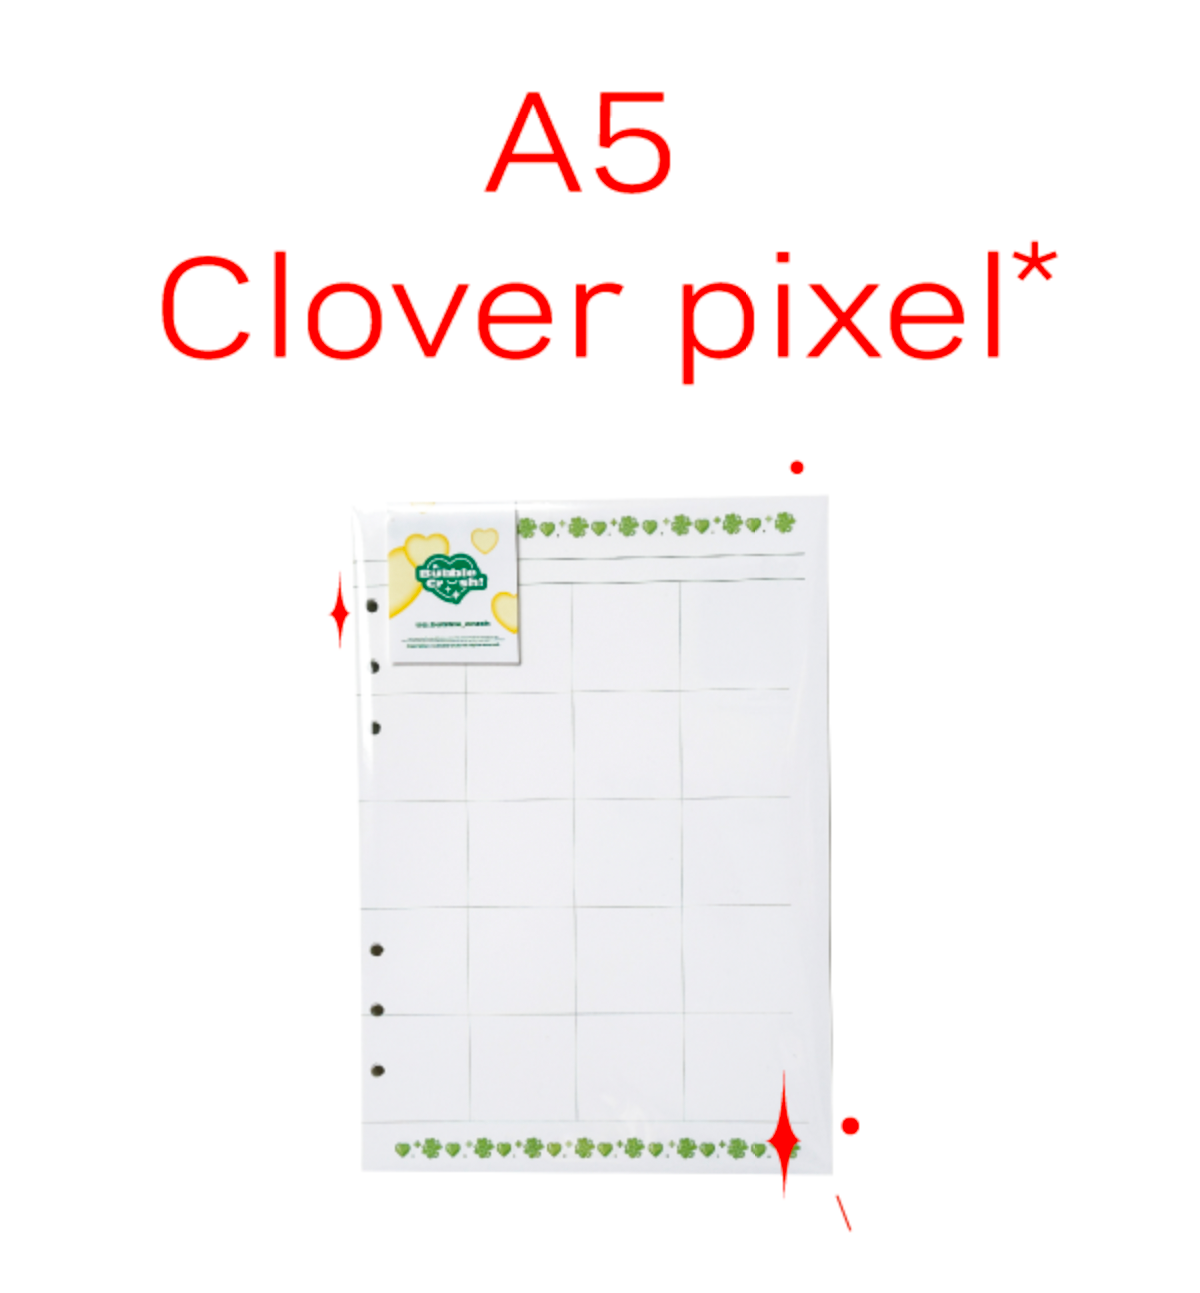 A5 Clover Pixel Paper Refill